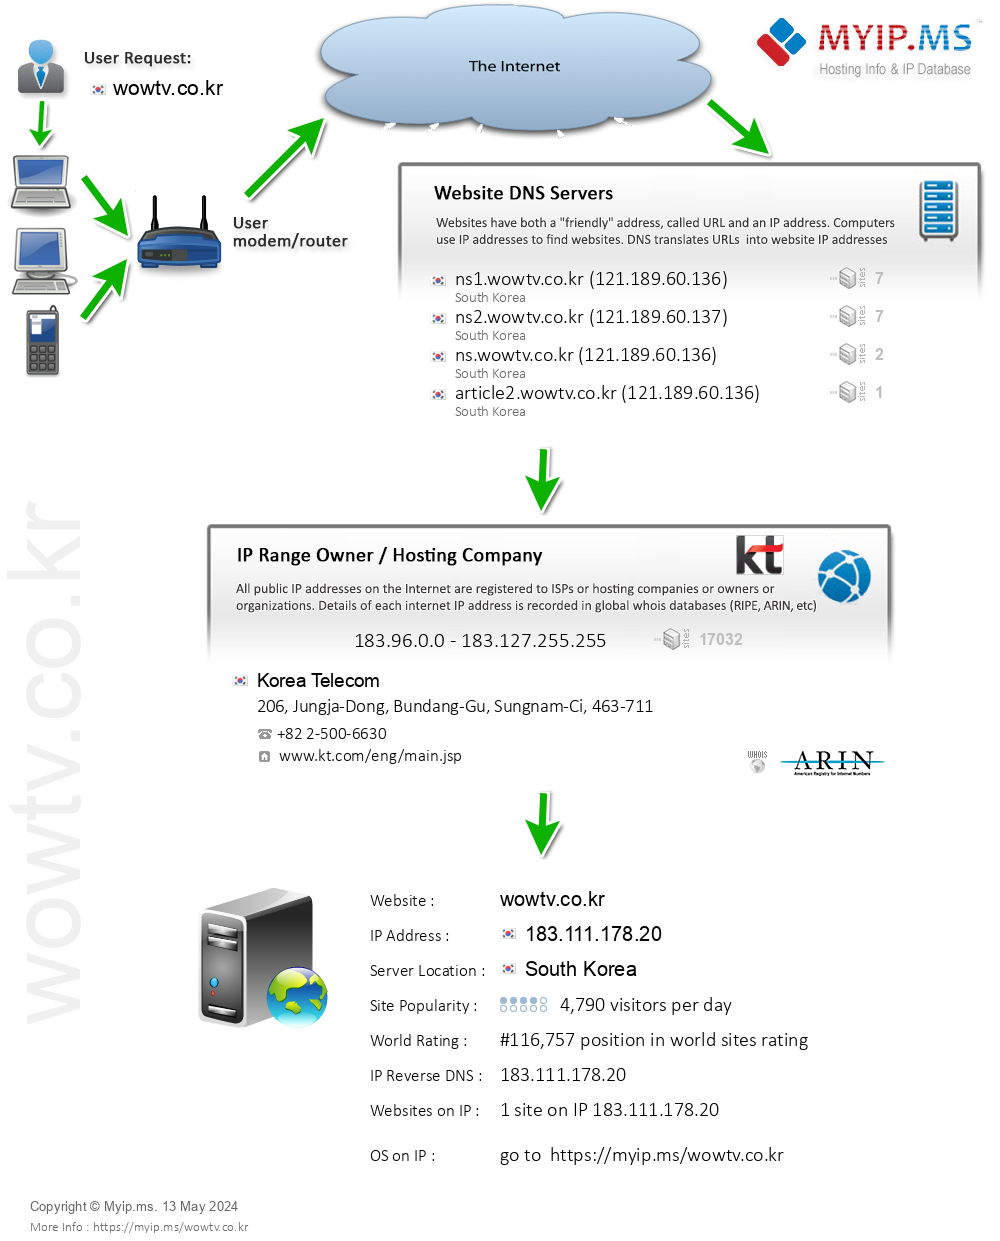 Wowtv.co.kr - Website Hosting Visual IP Diagram